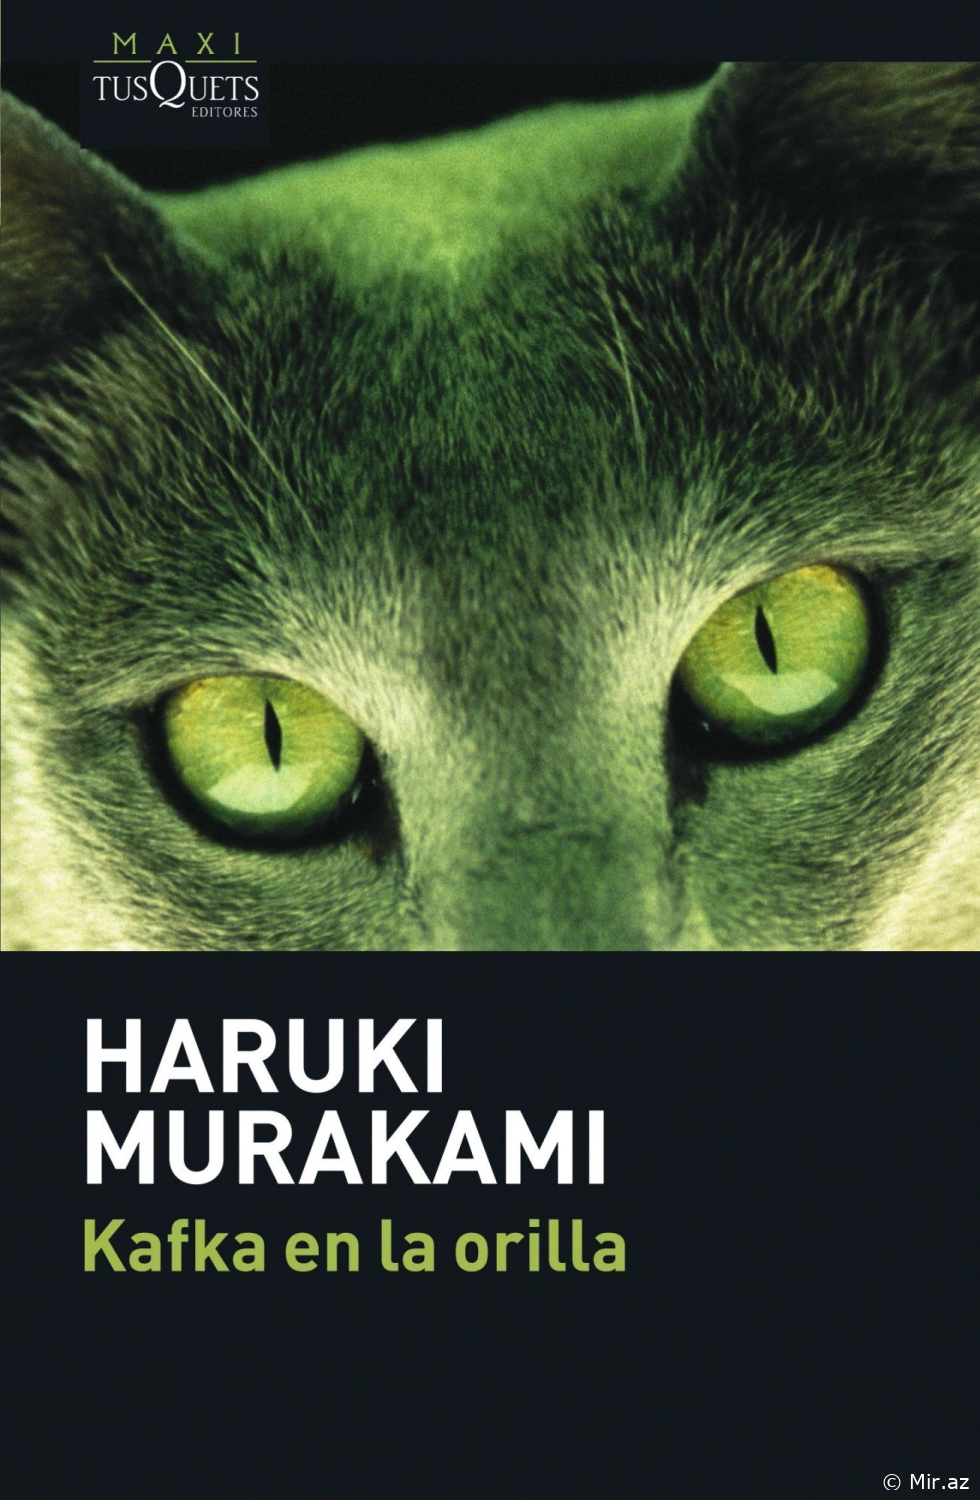 Haruki Murakami "Kafka en la orilla" PDF